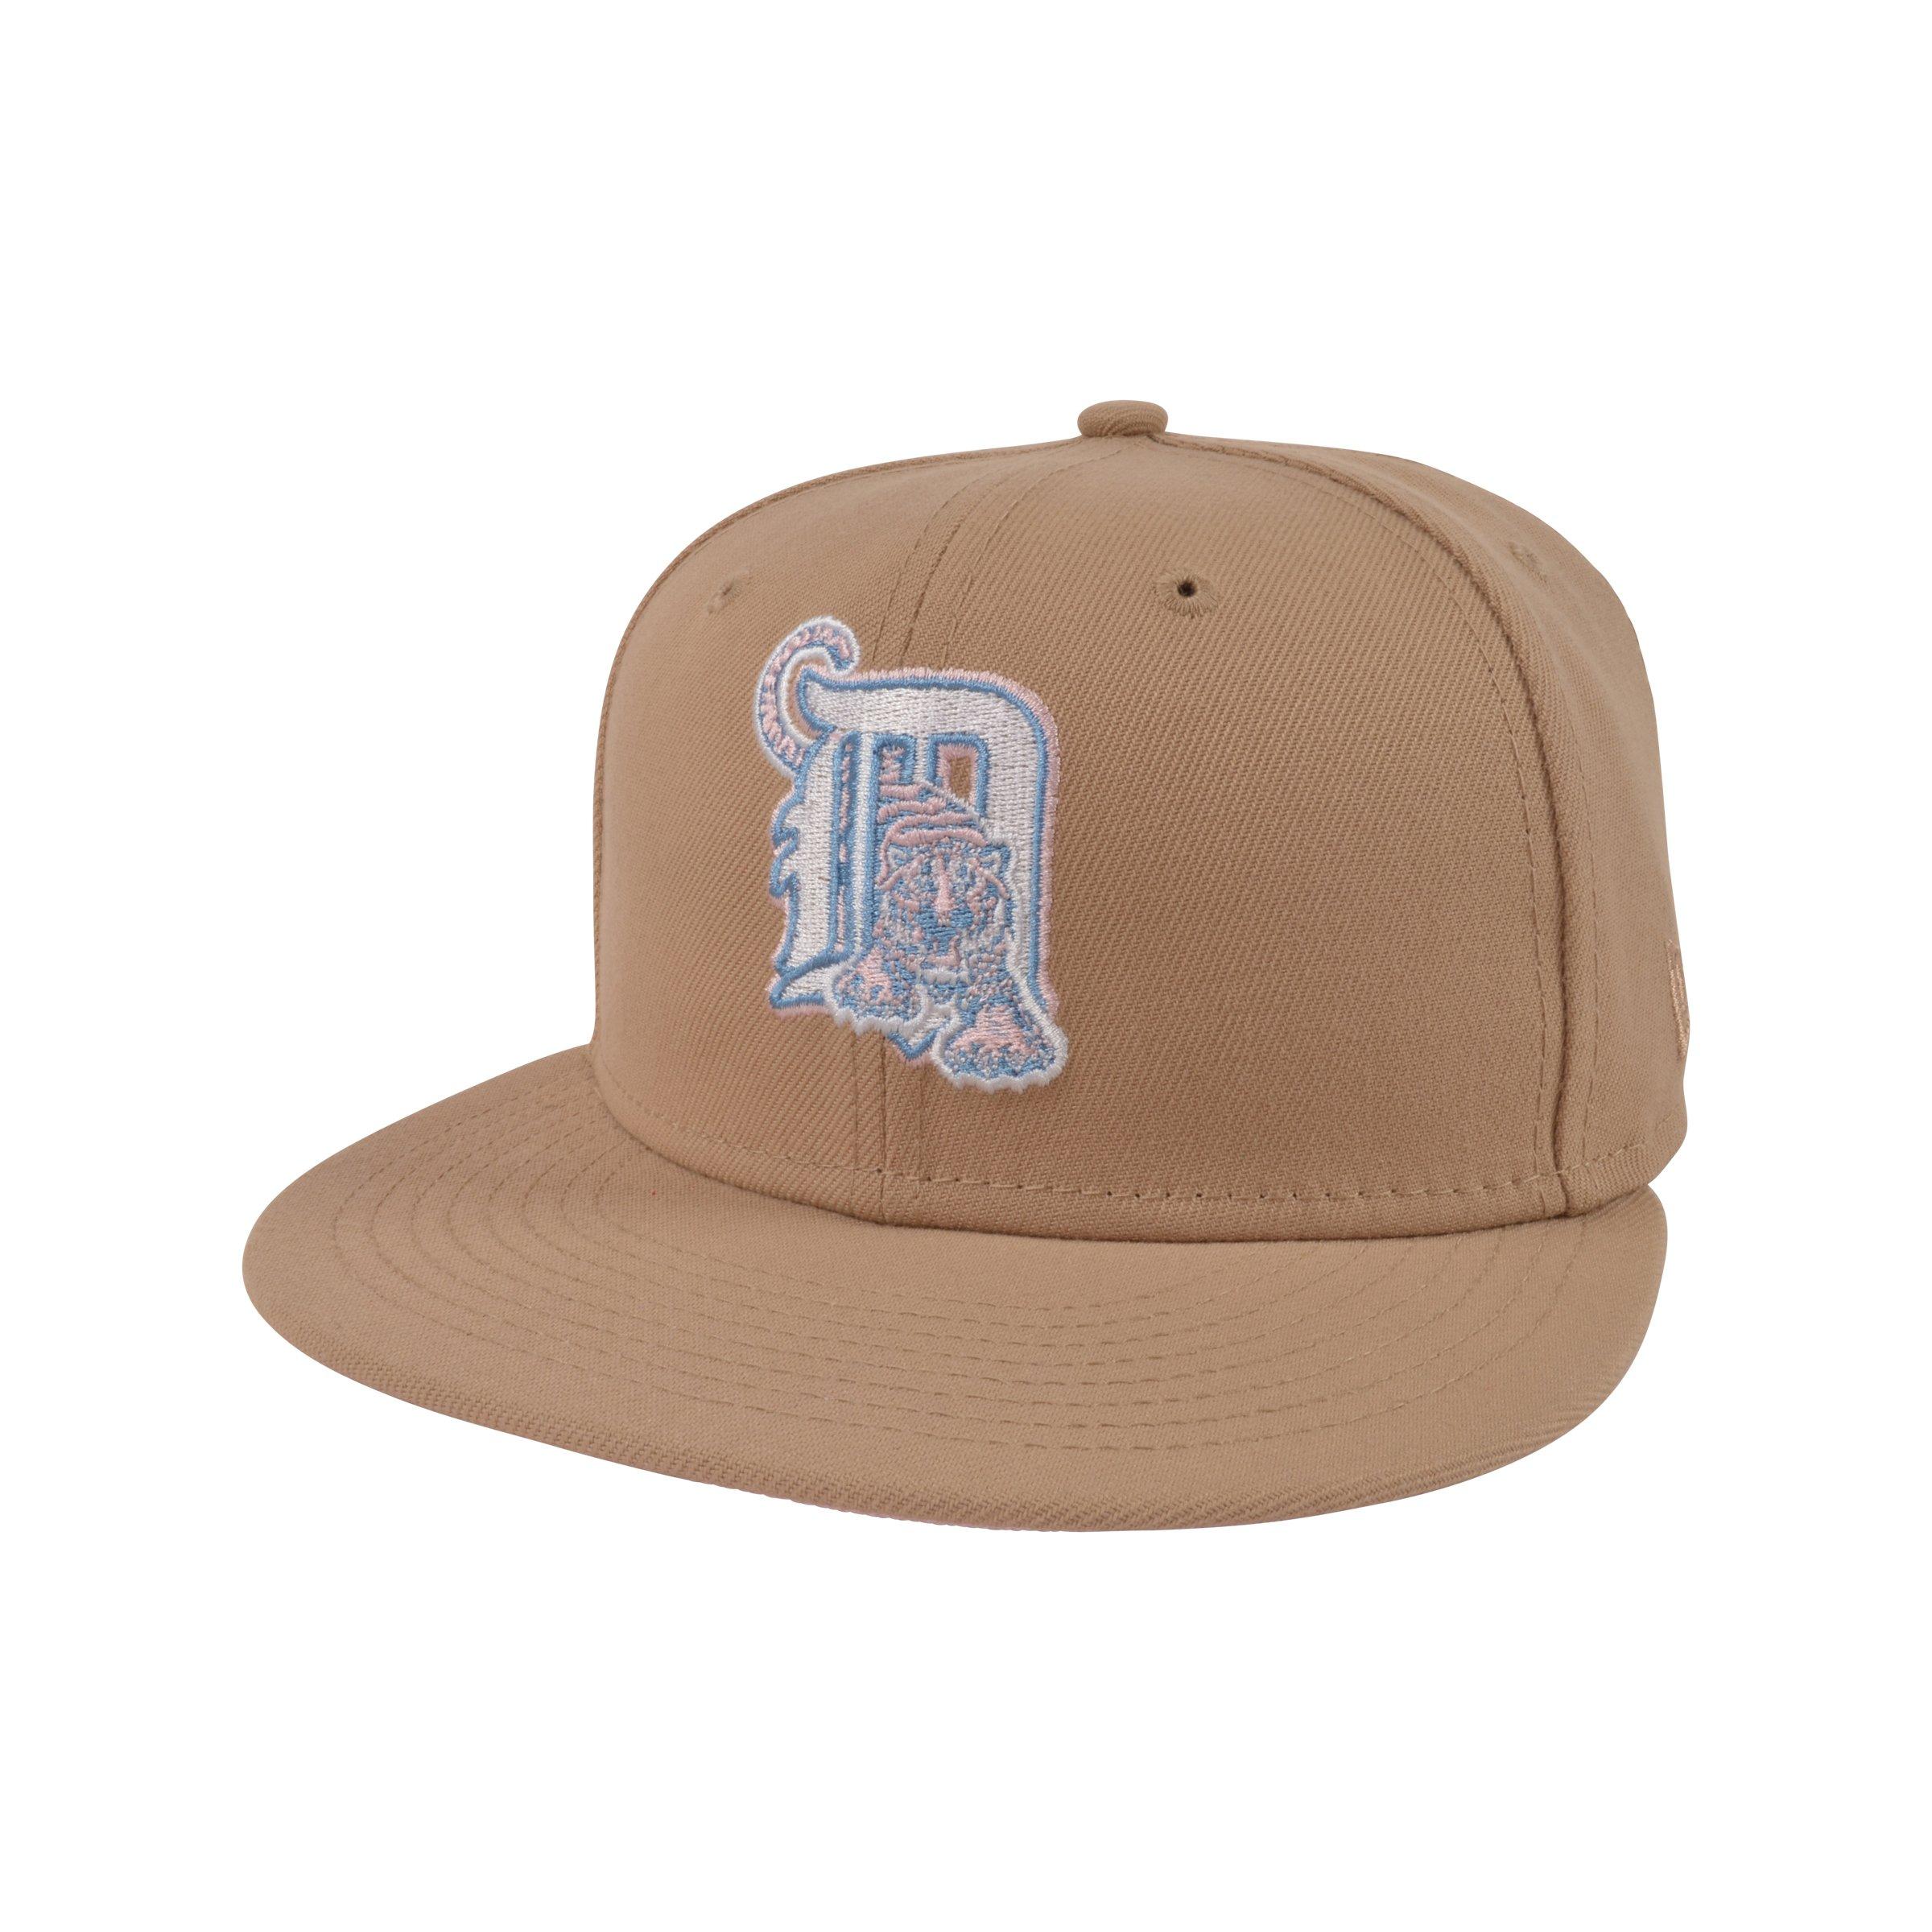 Fan Favorite, Accessories, Nwt Detroit Tigers Baseball Cap Hat Fan  Favorite